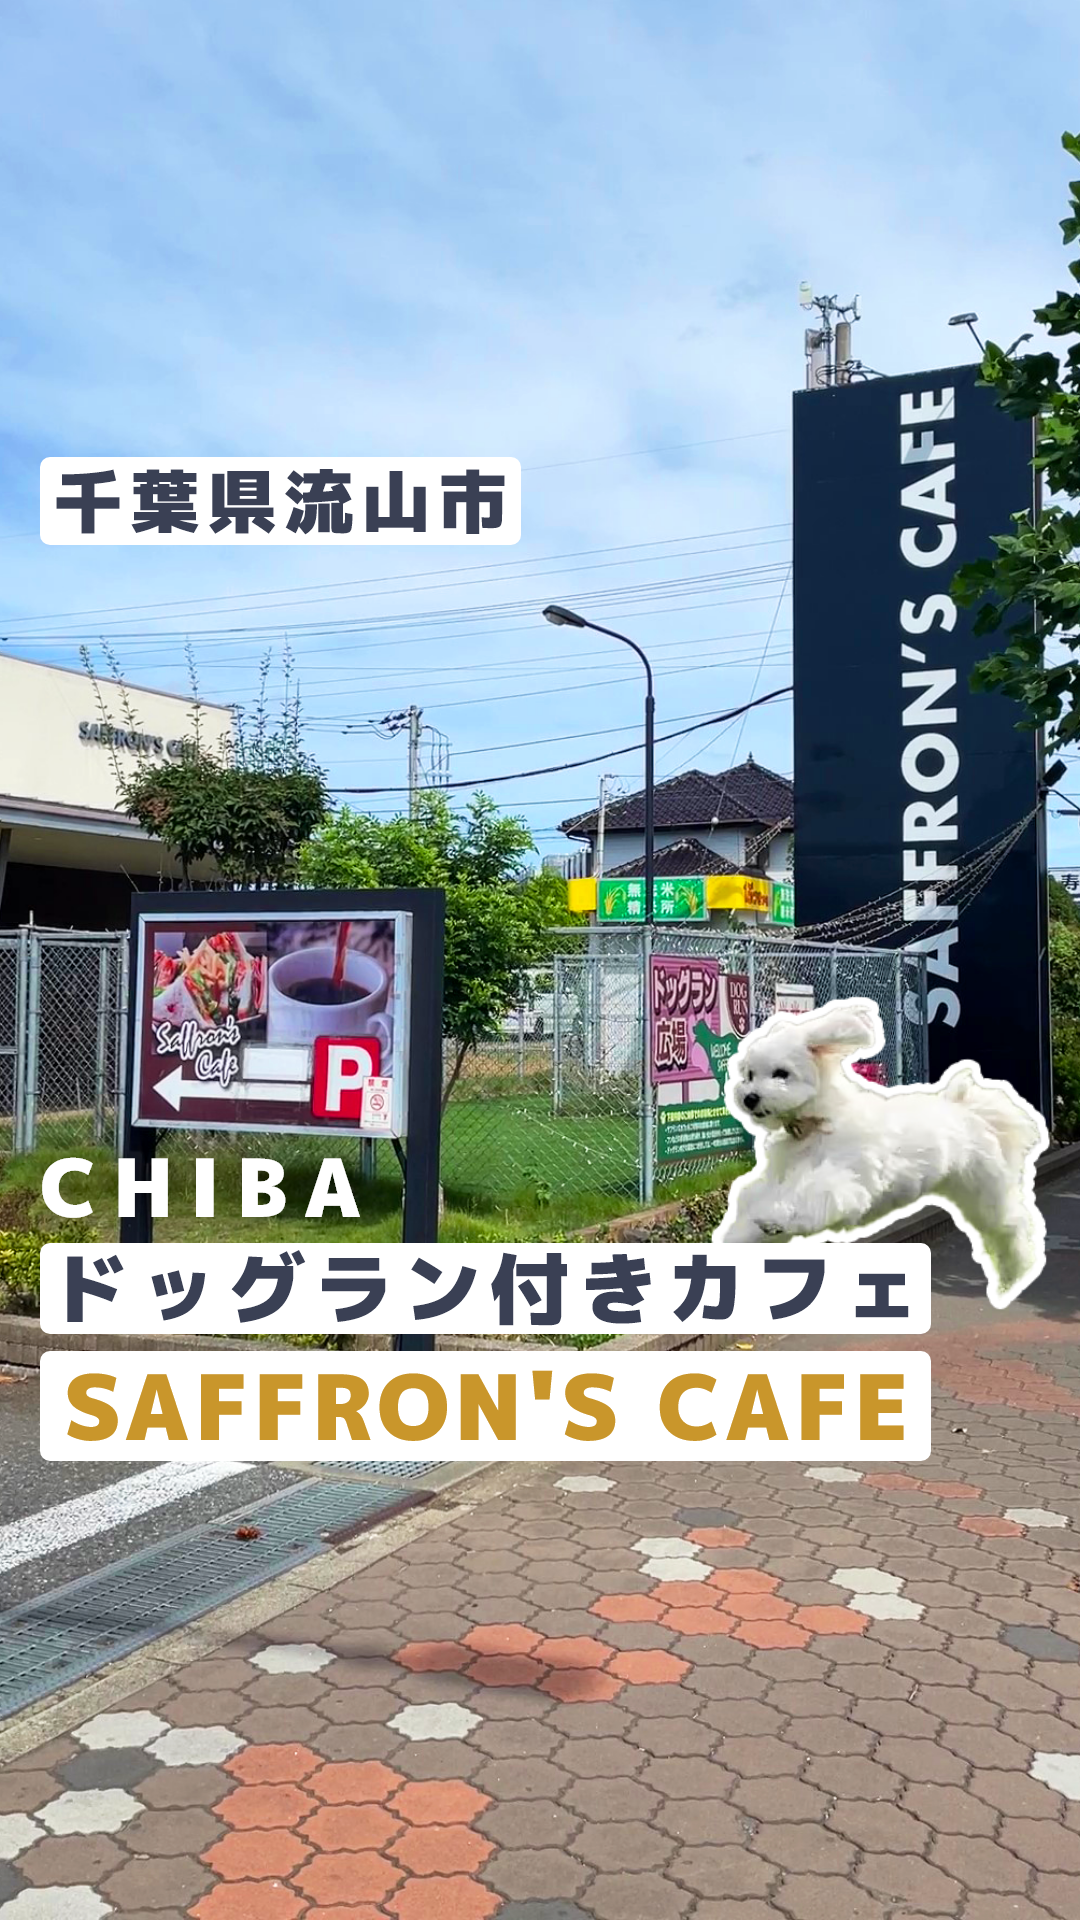 サフランカフェ SAFFRON’S CAFE